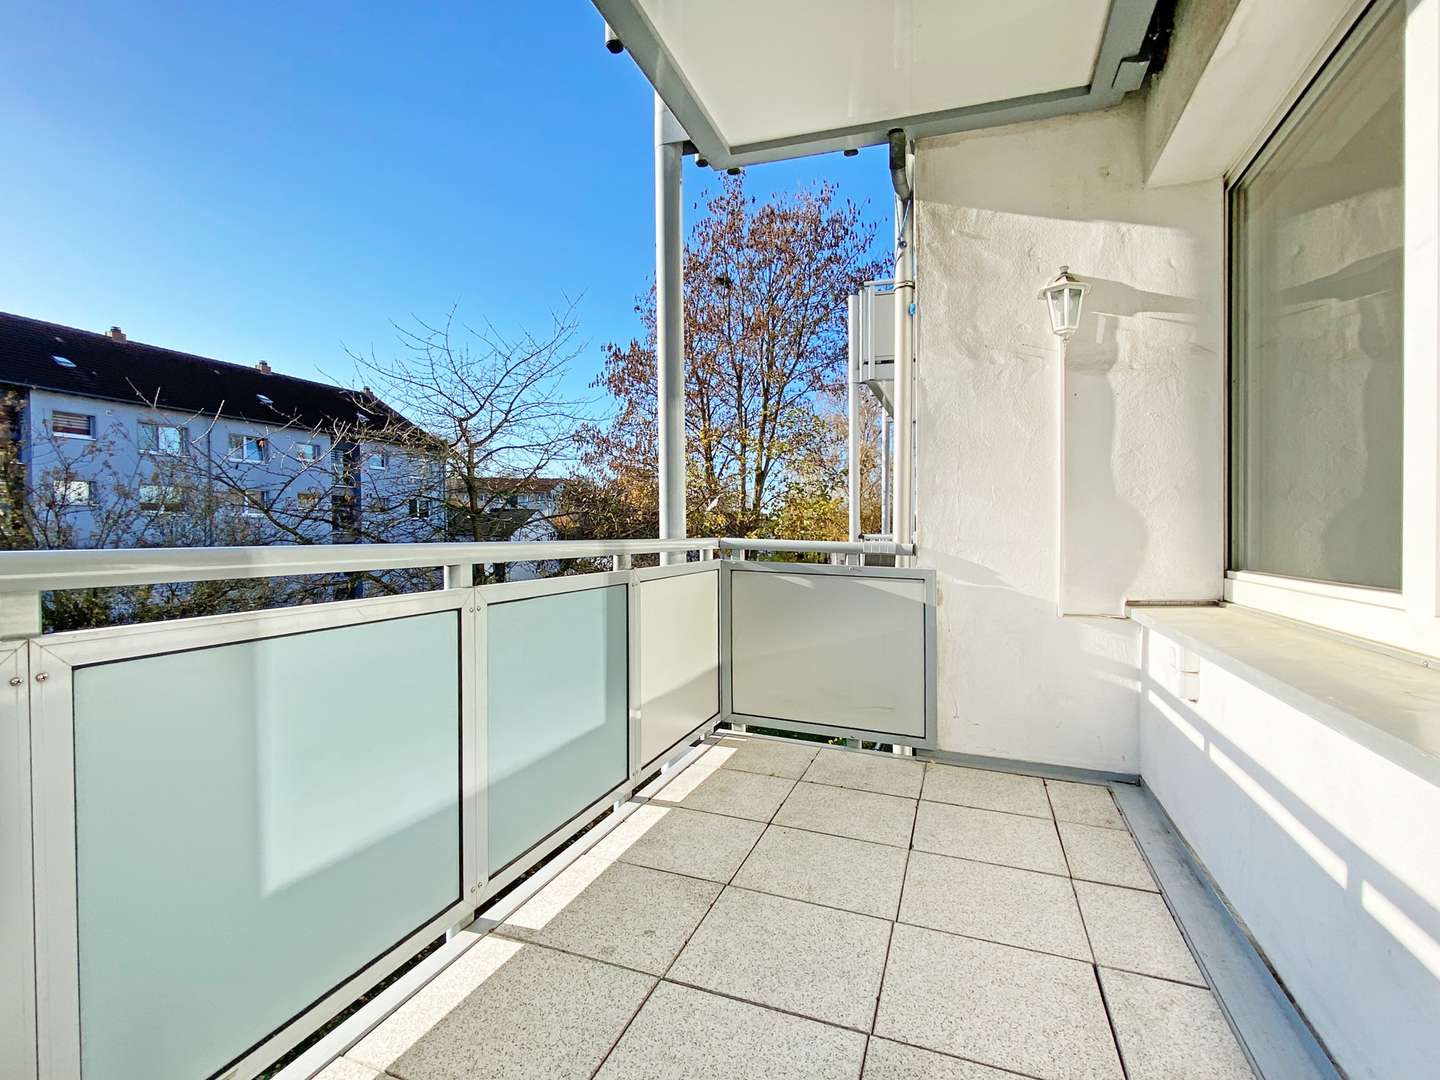 Balkon - Etagenwohnung in 45886 Gelsenkirchen / Ückendorf mit 67m² günstig kaufen